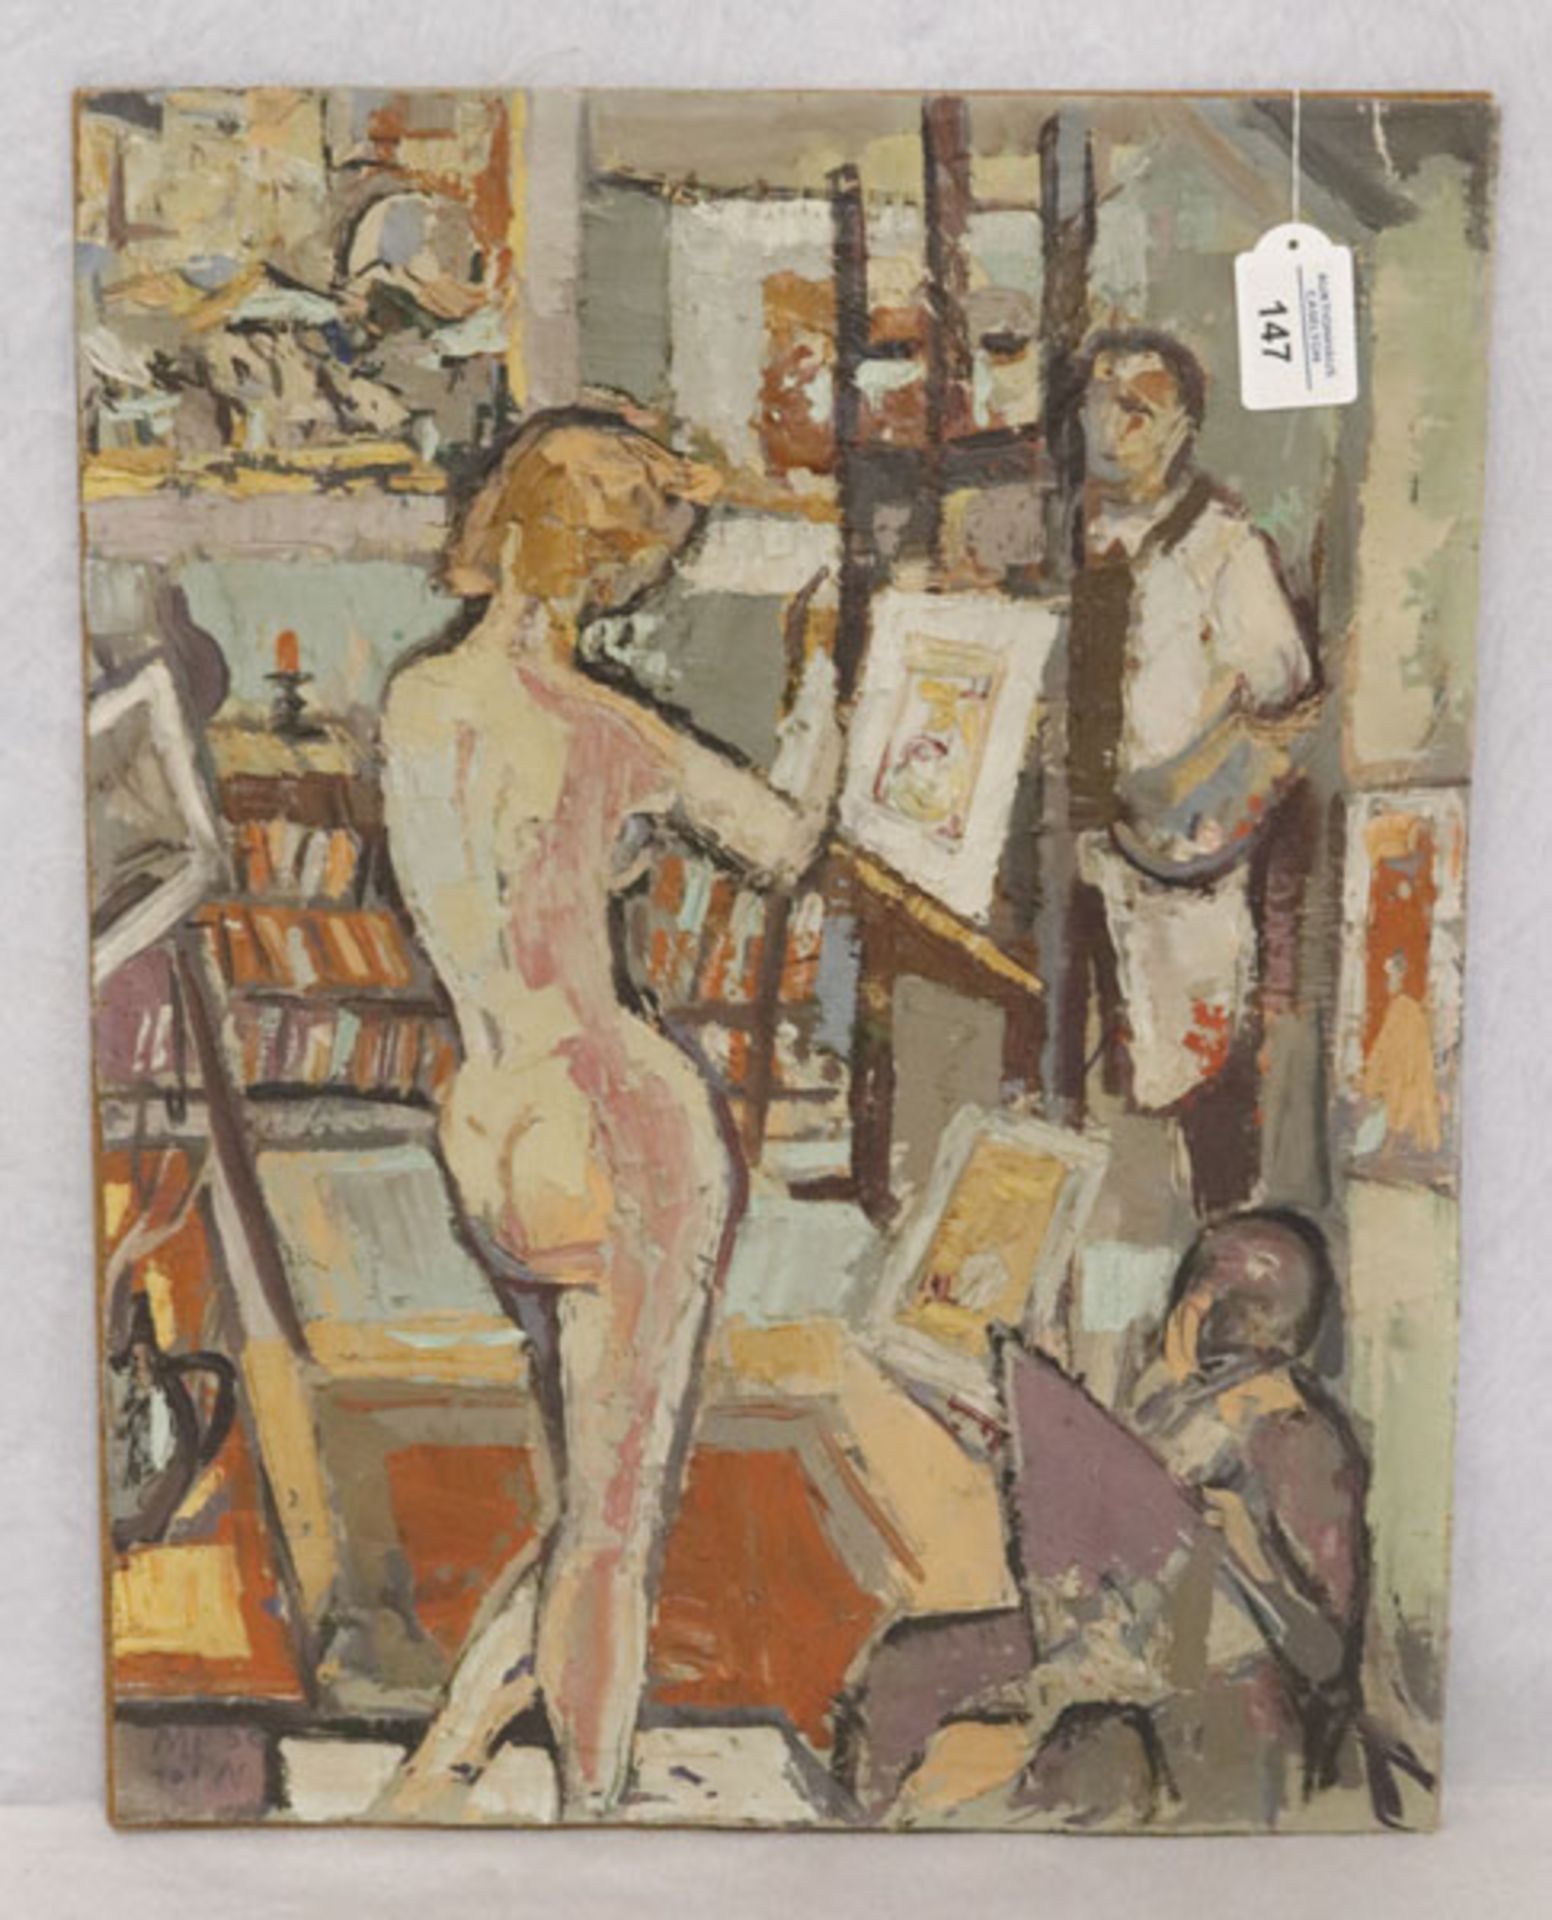 Gemälde ÖL/LW 'Frauenakt im Atelier', monogrammiert MP 56 19 TW ?, ohne Rahmen 50 cm x 39 cm (